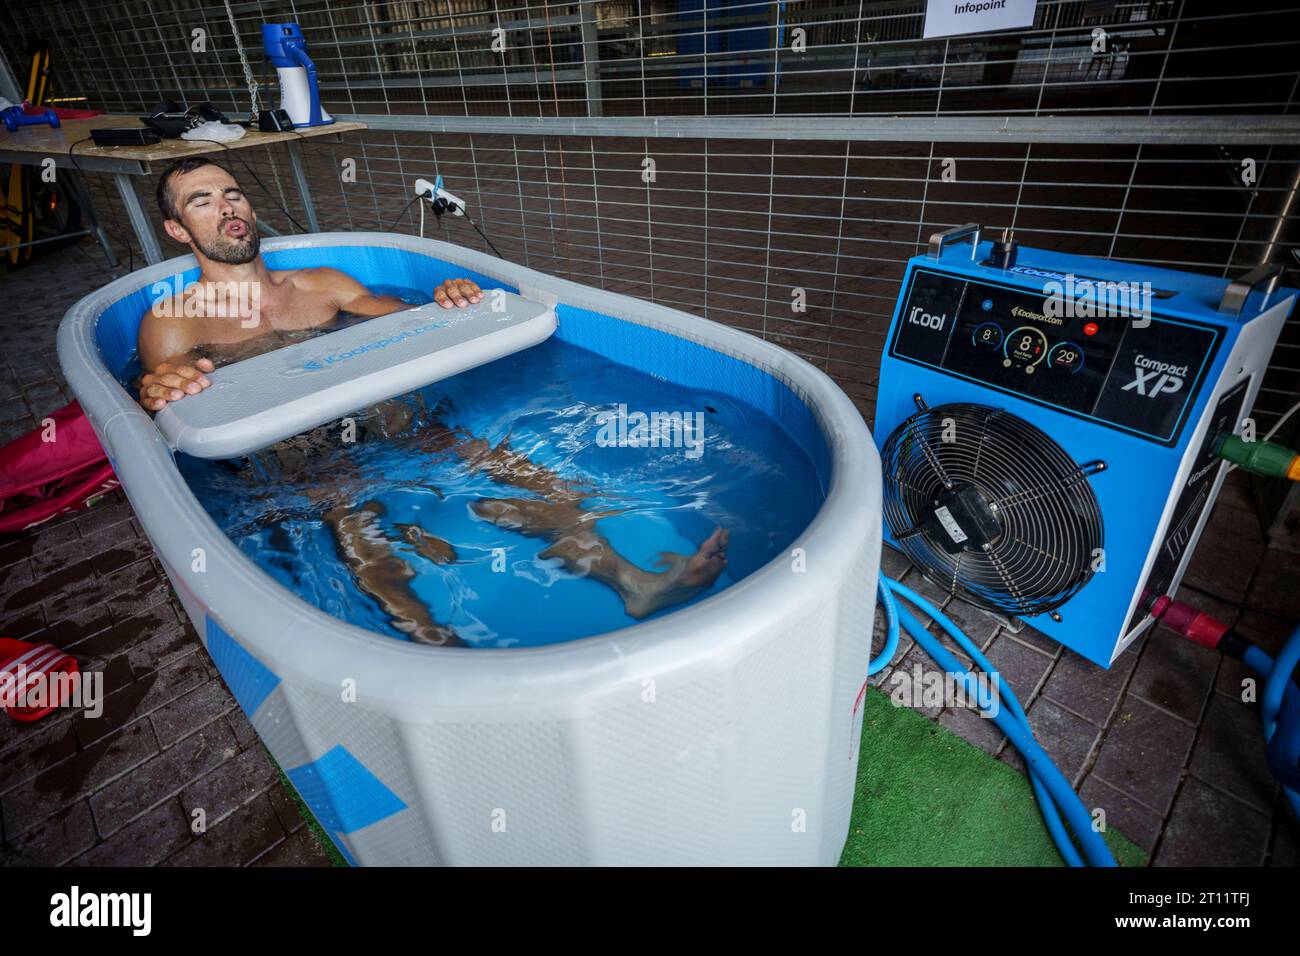 Le canoéiste olympique portugais Fernando Pimenta prenant un bain glacé de thérapie froide après la pratique pour la récupération musculaire Banque D'Images